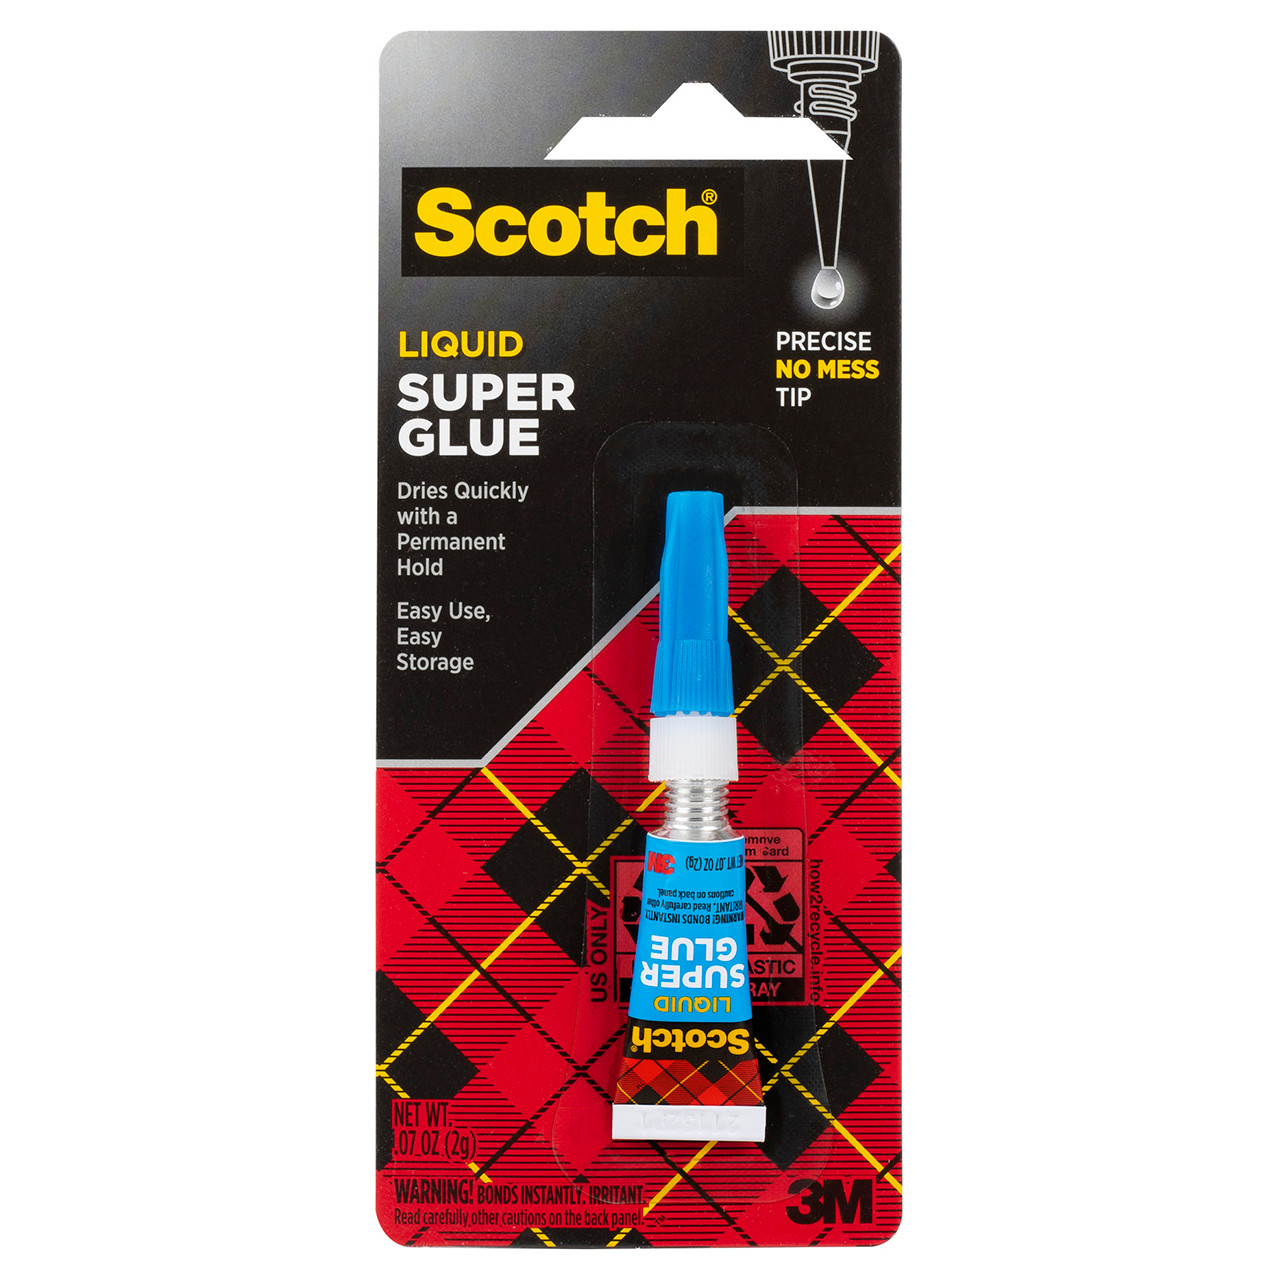 Scotch Super Glue Liquid